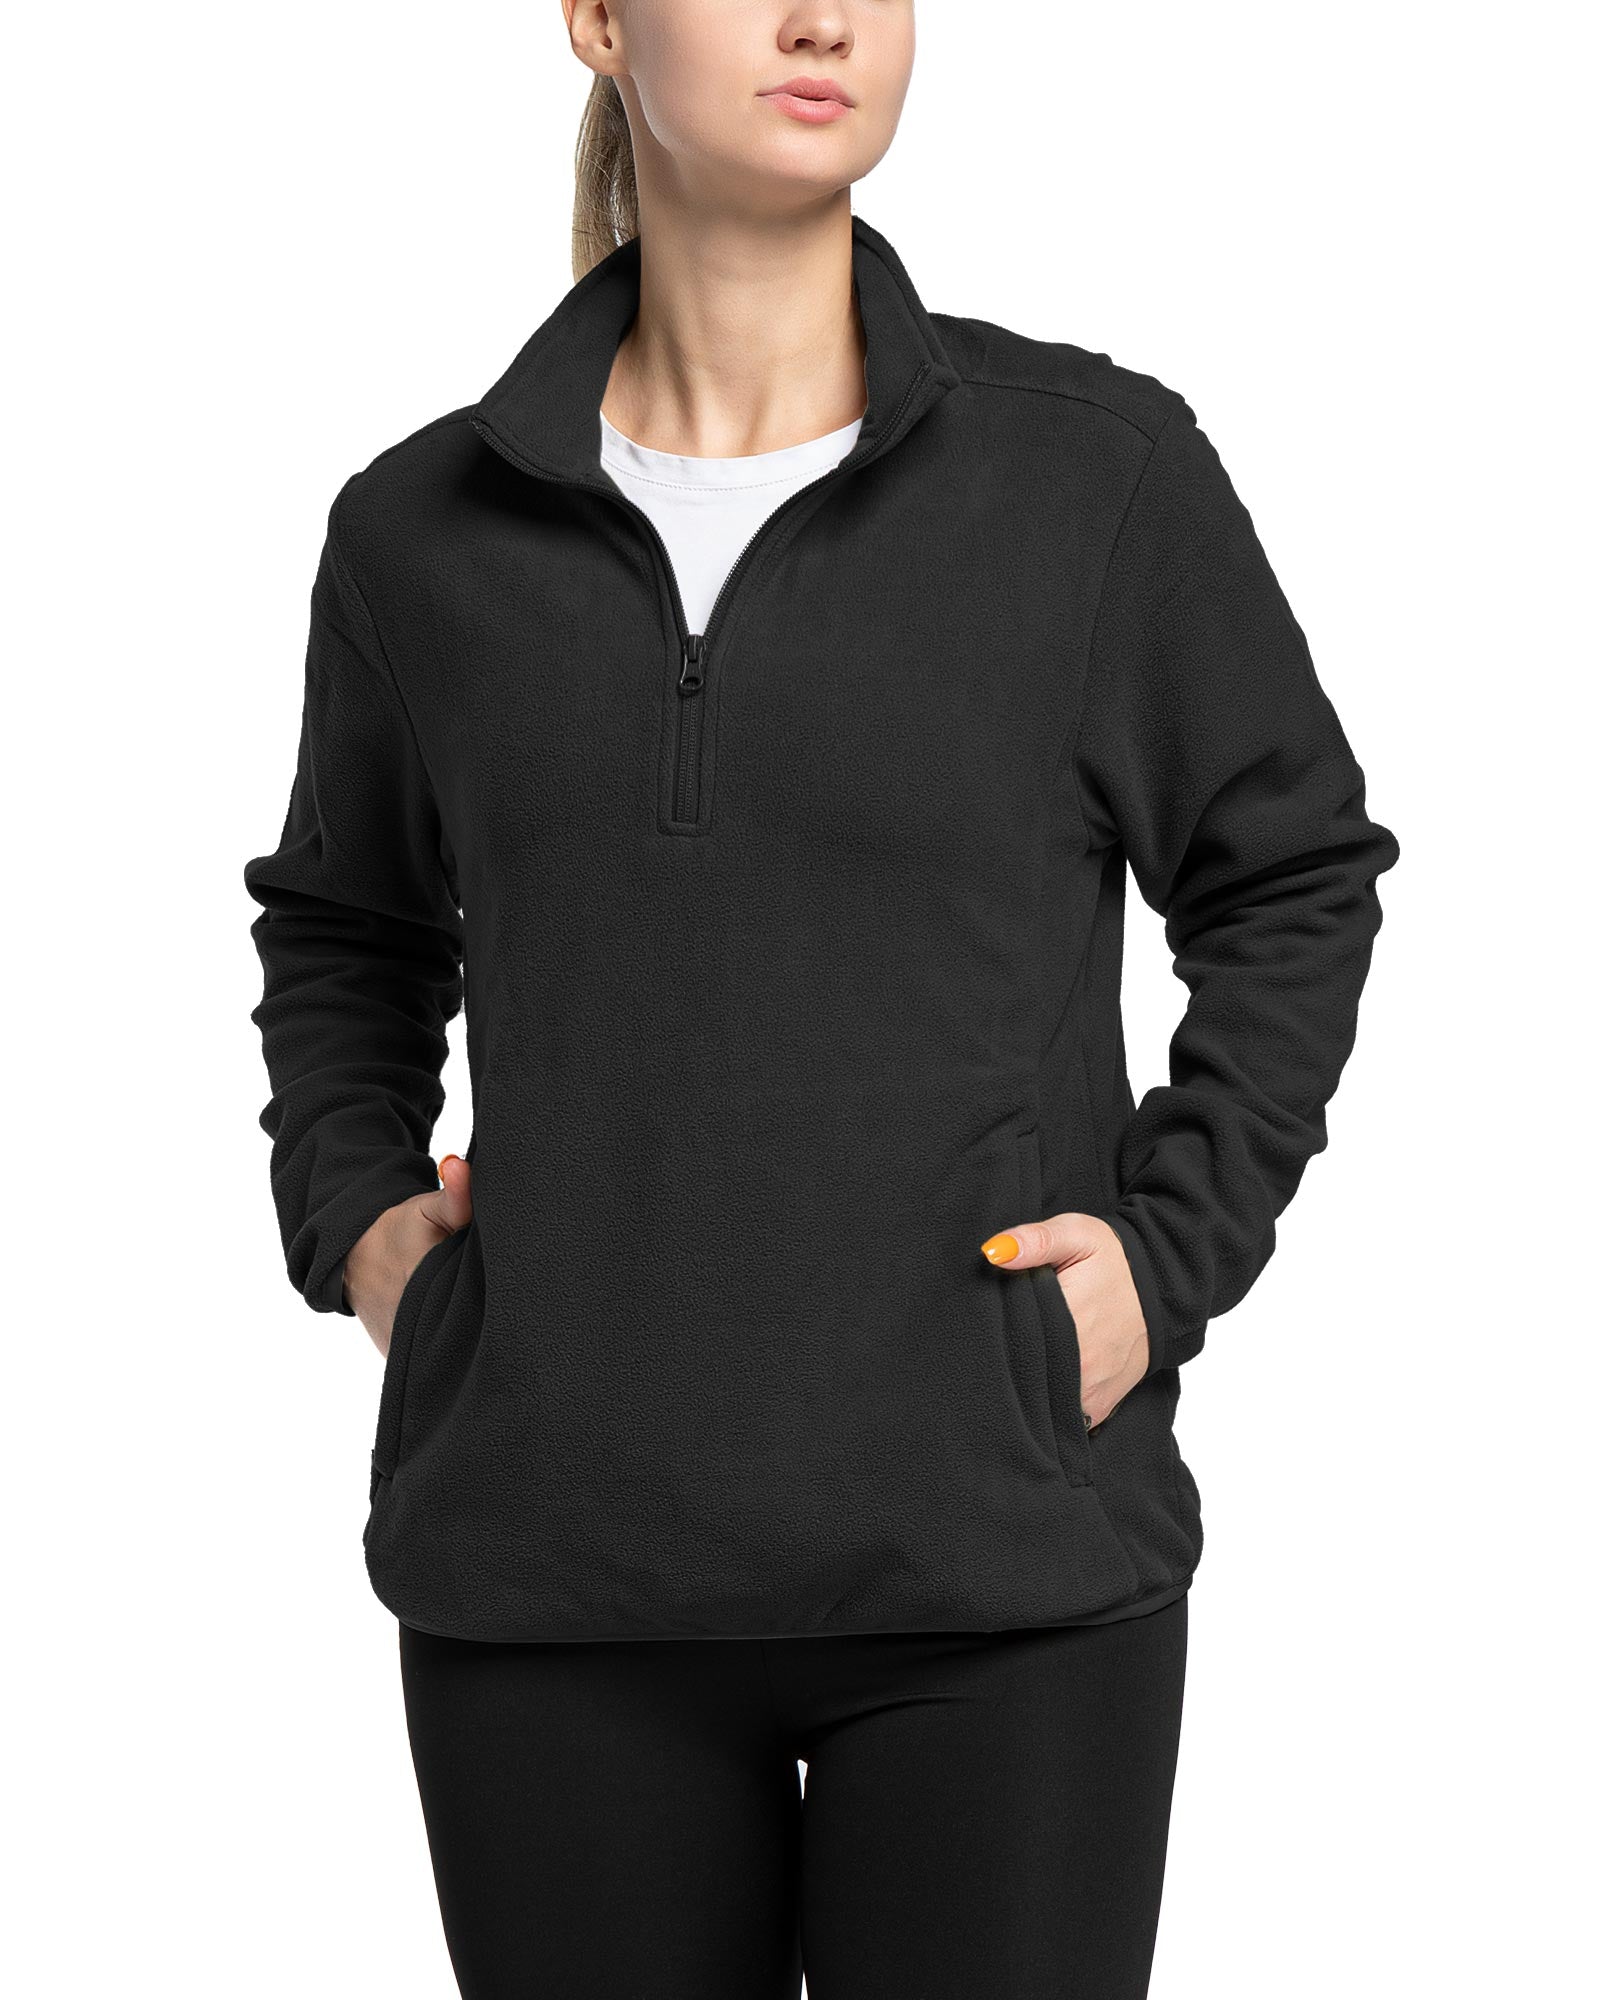 Women's Lightweight Long Sleeve Fleece Pullover Jacket, Quarter